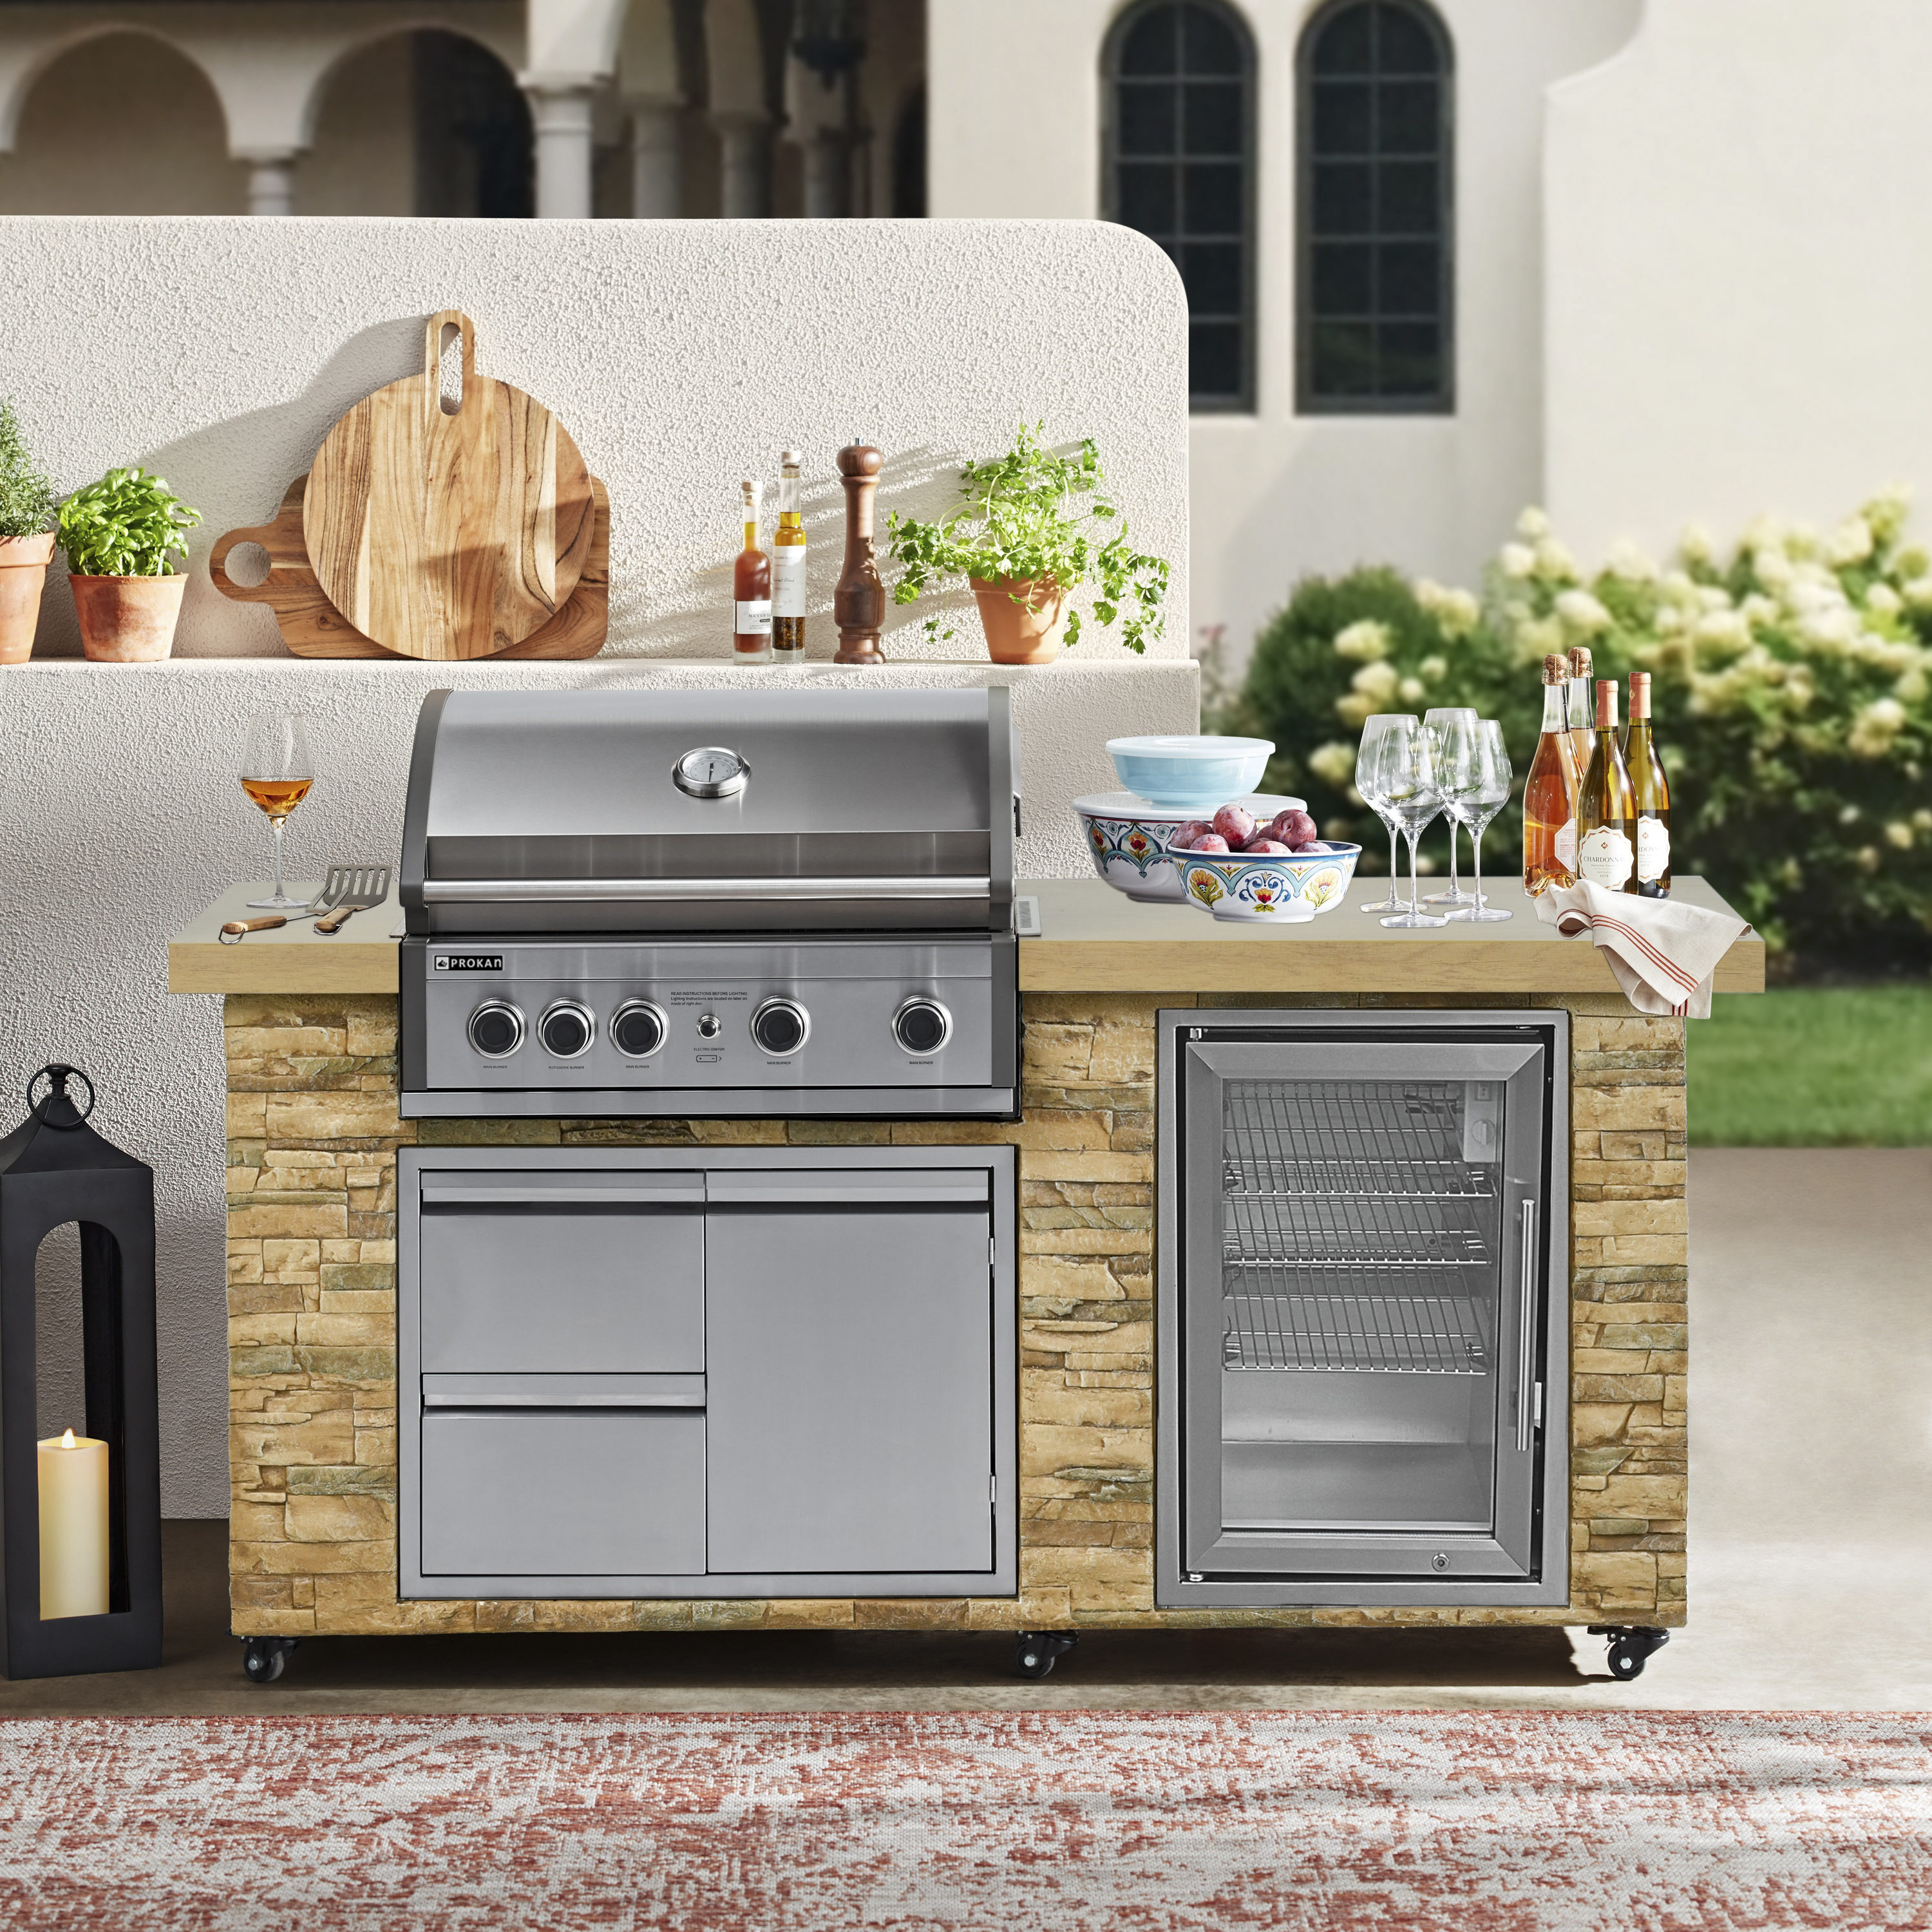 Thor Kitchen Outdoor Kitchen Sink Cabinet Stainless Steel MK01SS304 - Best  Buy